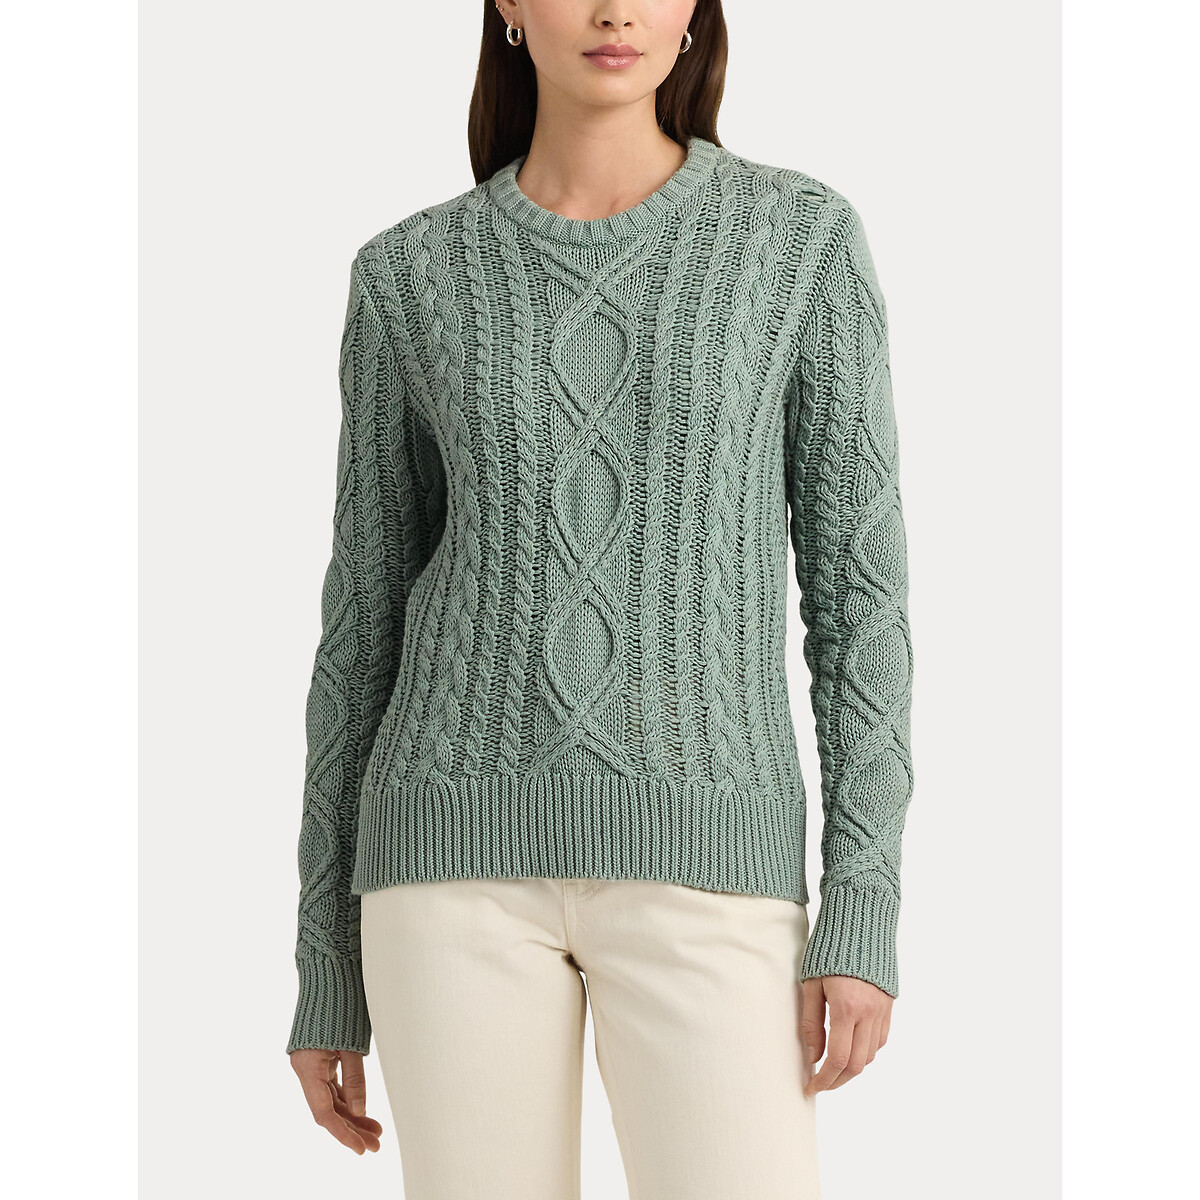 Пуловер с витым узором и круглым вырезом из хлопкового трикотажа HILVAITE XL зеленый пуловер с высоким воротником из трикотажа с витым узором